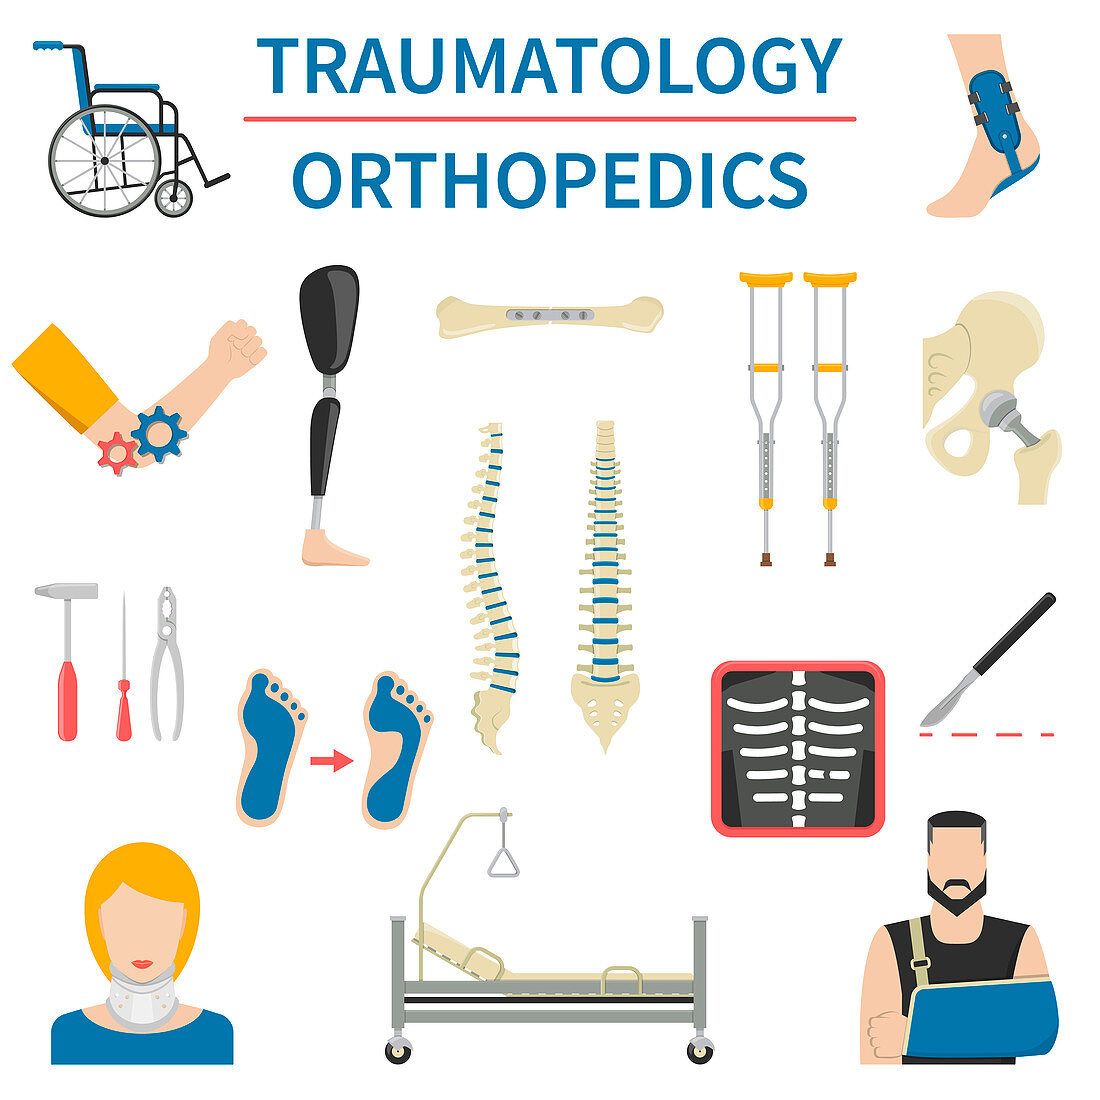 Orthopaedics, illustration